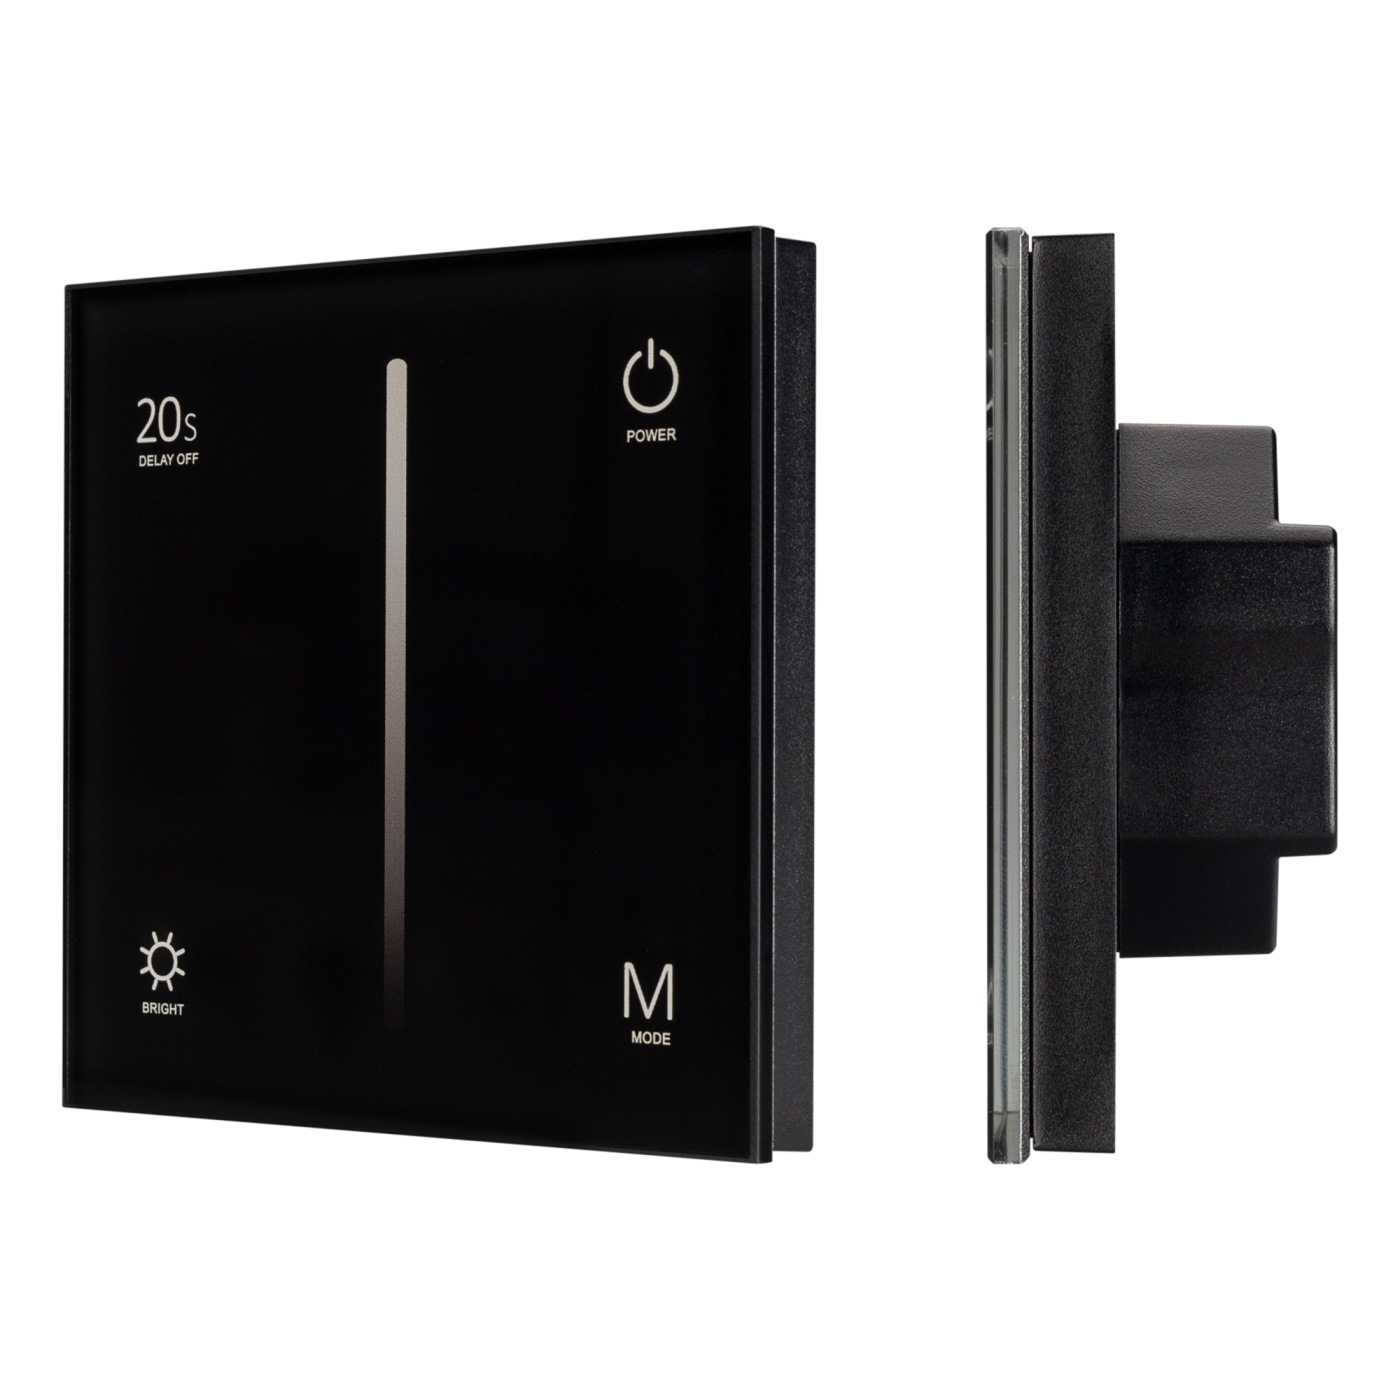 Панель SMART-P36-DIM-IN Black (230V, 1.2A, TRIAC, Sens, 2.4G) (Arlight, IP20 Пластик, 5 лет) куртка стеганая mist oversize размер 46 чёрный